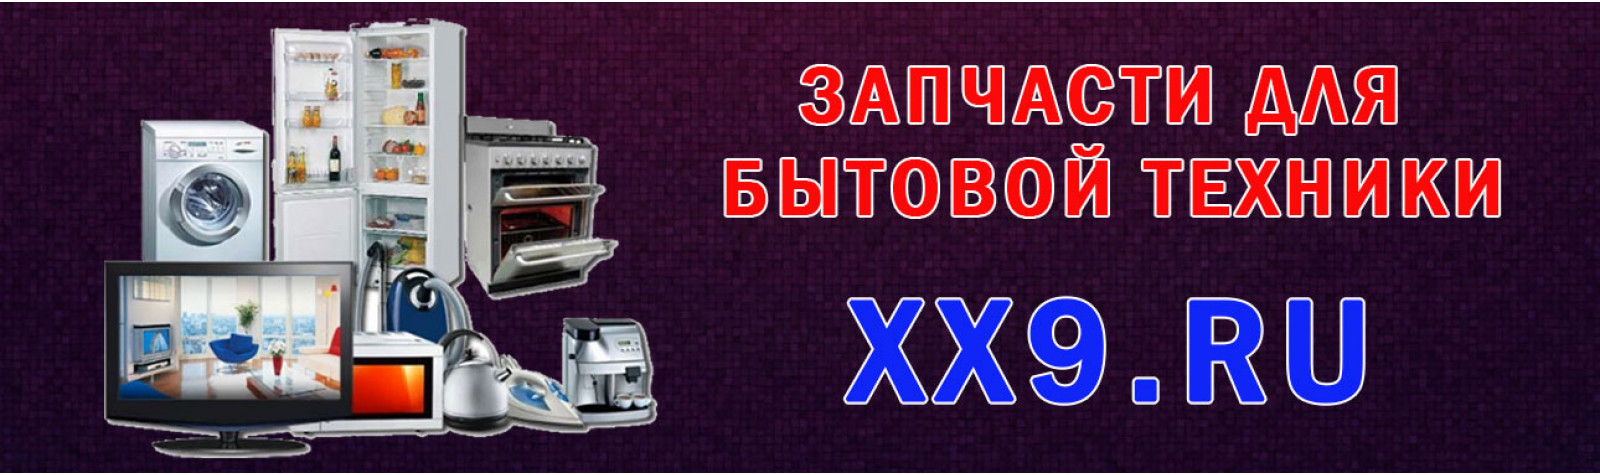 запчасти для бытовой техники на xx9.ru